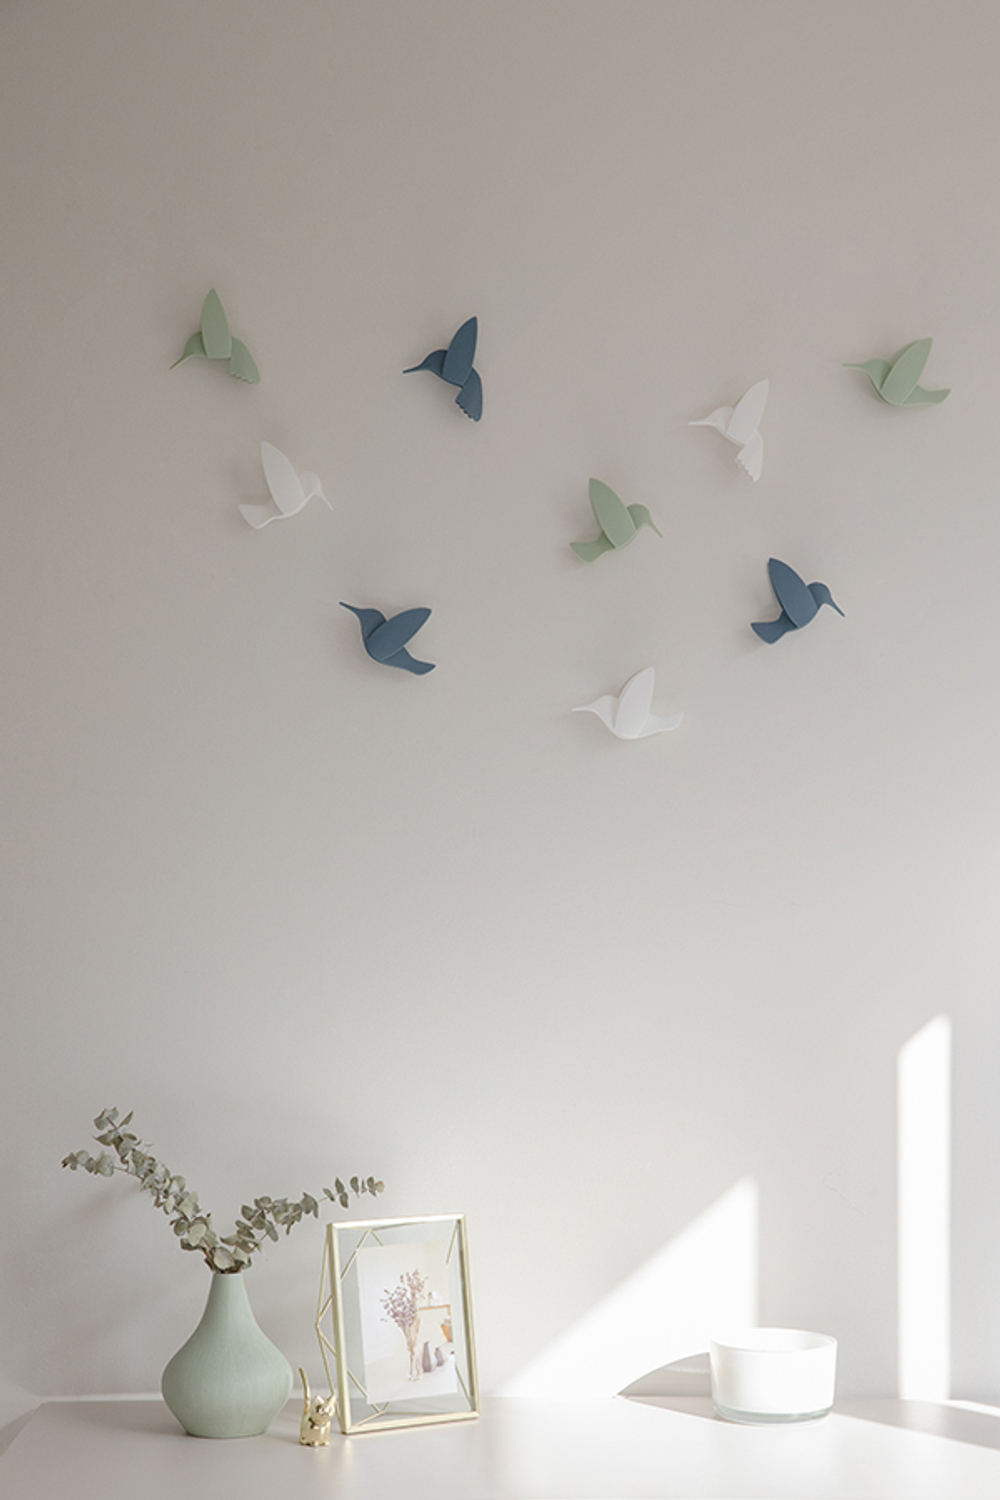 Декор для стен Hummingbird 9 элементов разноцветный, Umbra